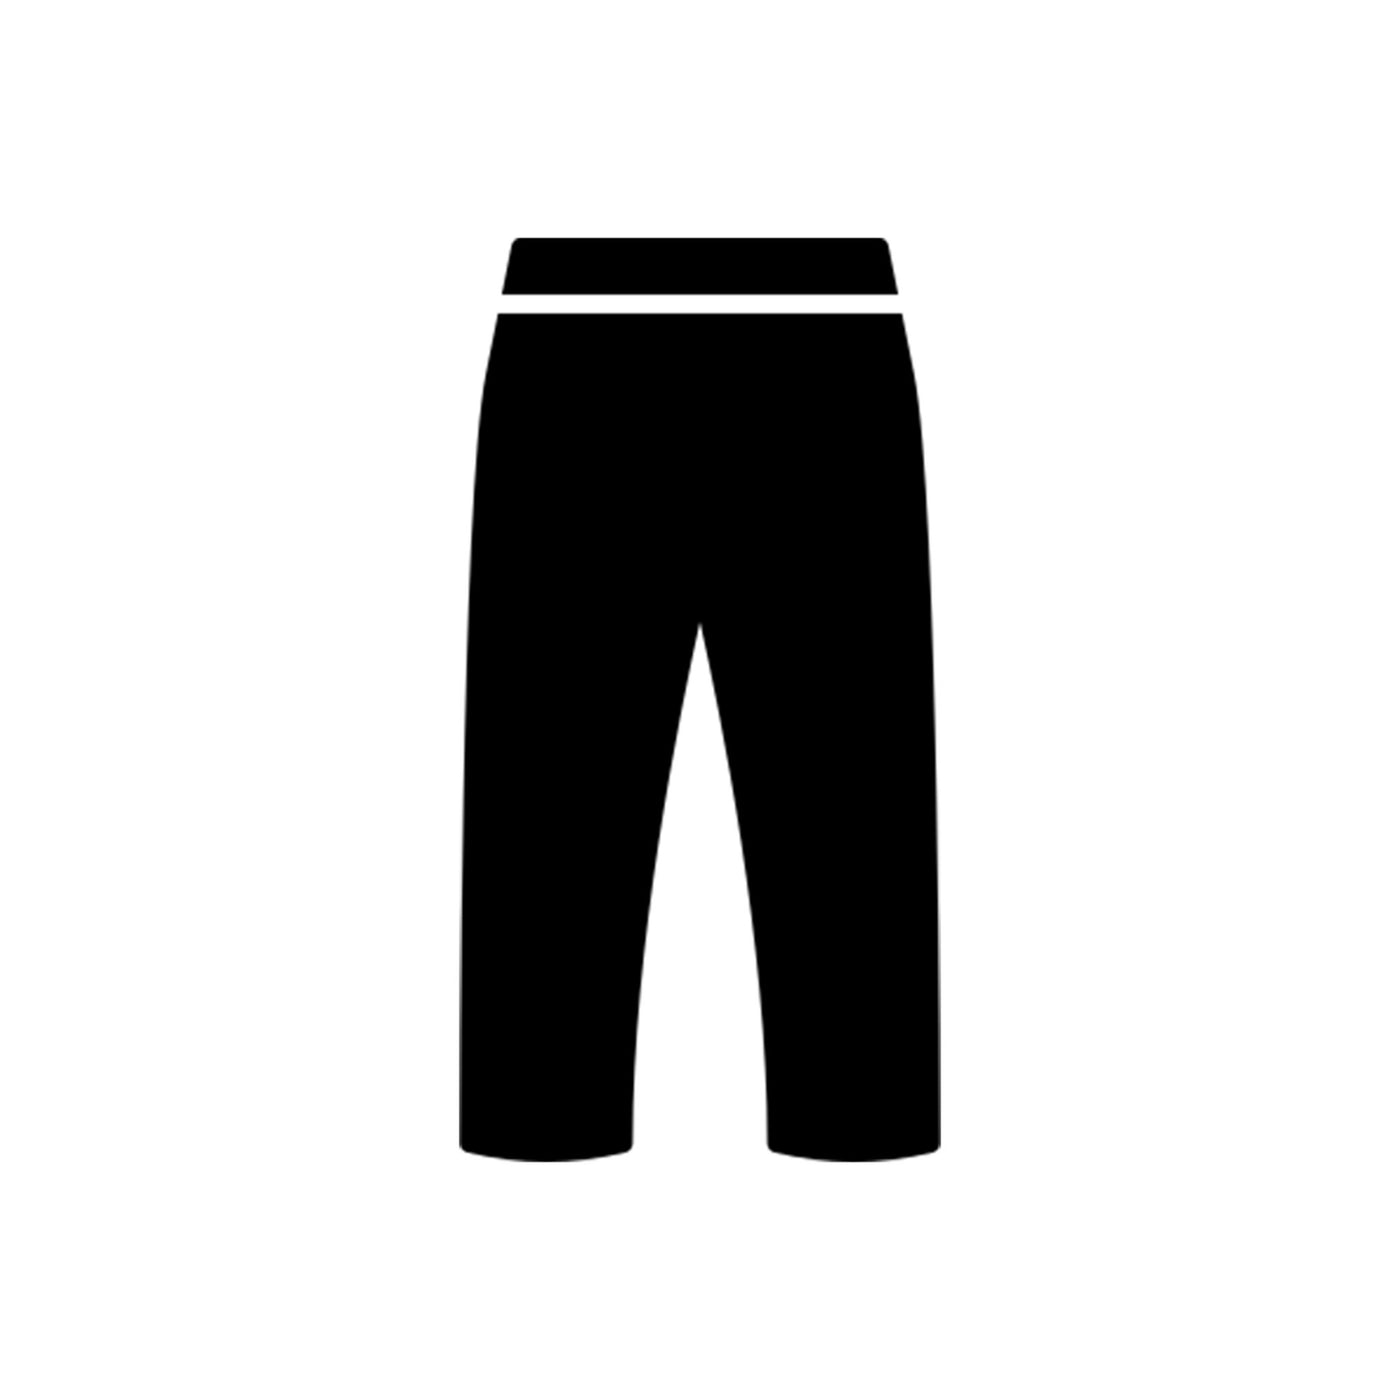 Workout pants